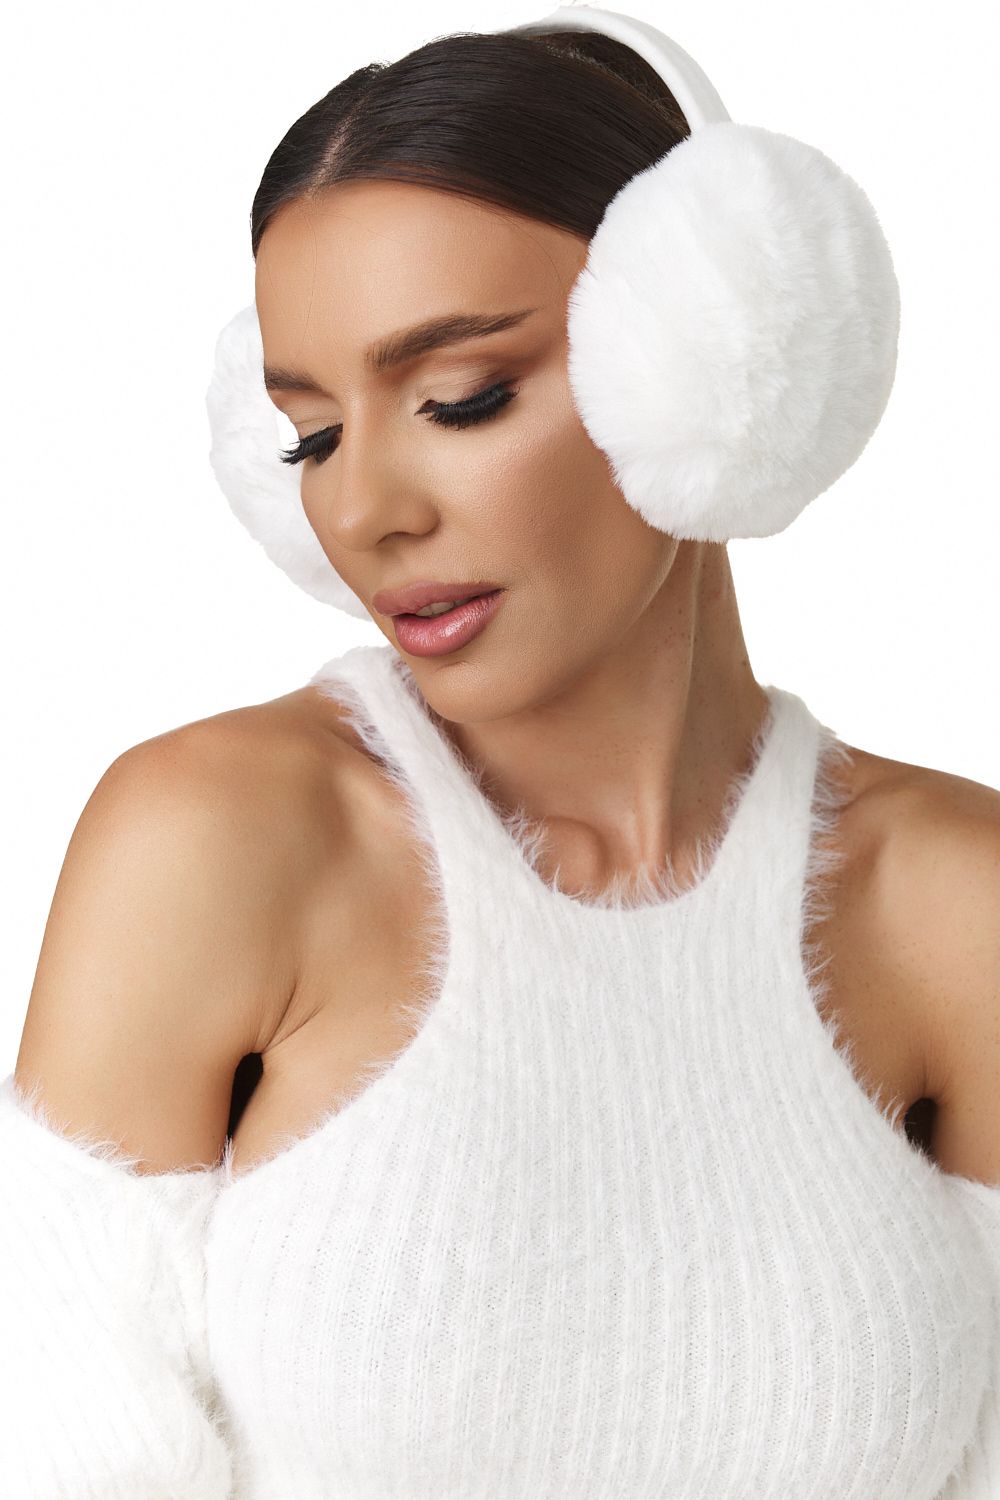 Monezea Bogas white ear protection headphones